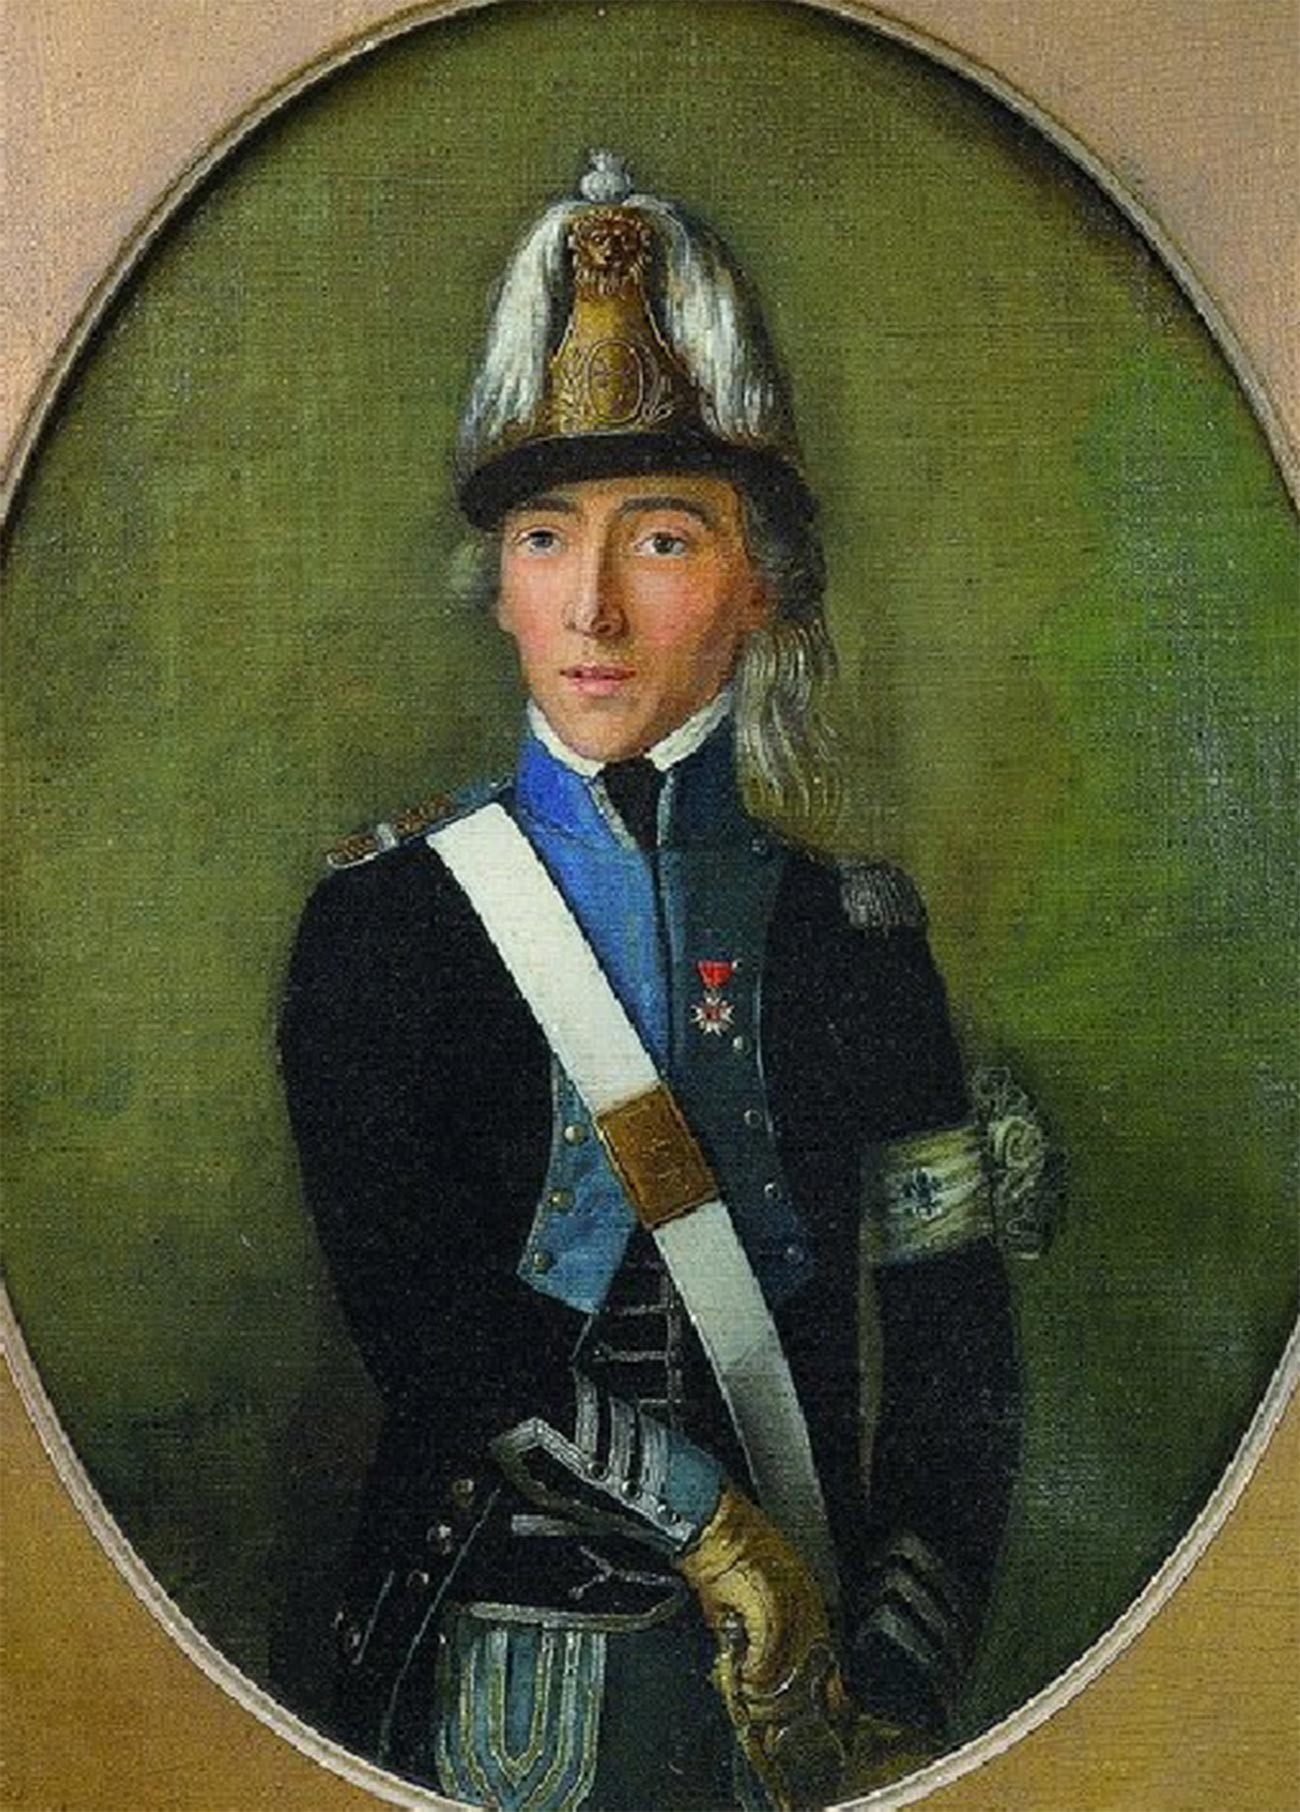 Captain of the émigré royalist corps of Condé.